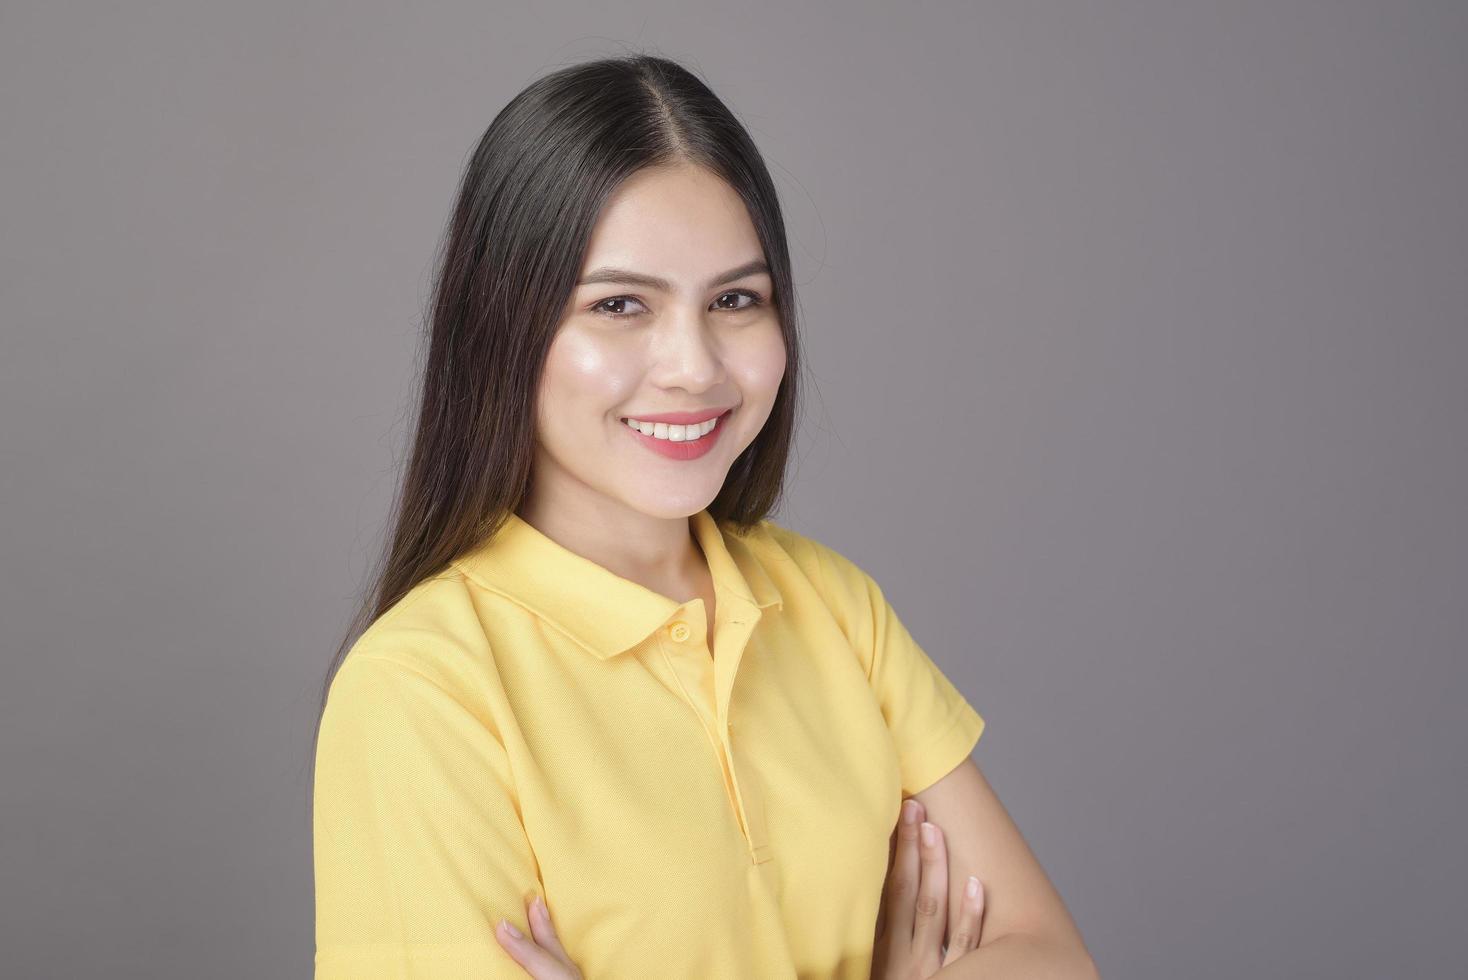 jovem mulher bonita confiante vestindo camisa amarela está no estúdio de fundo cinza foto